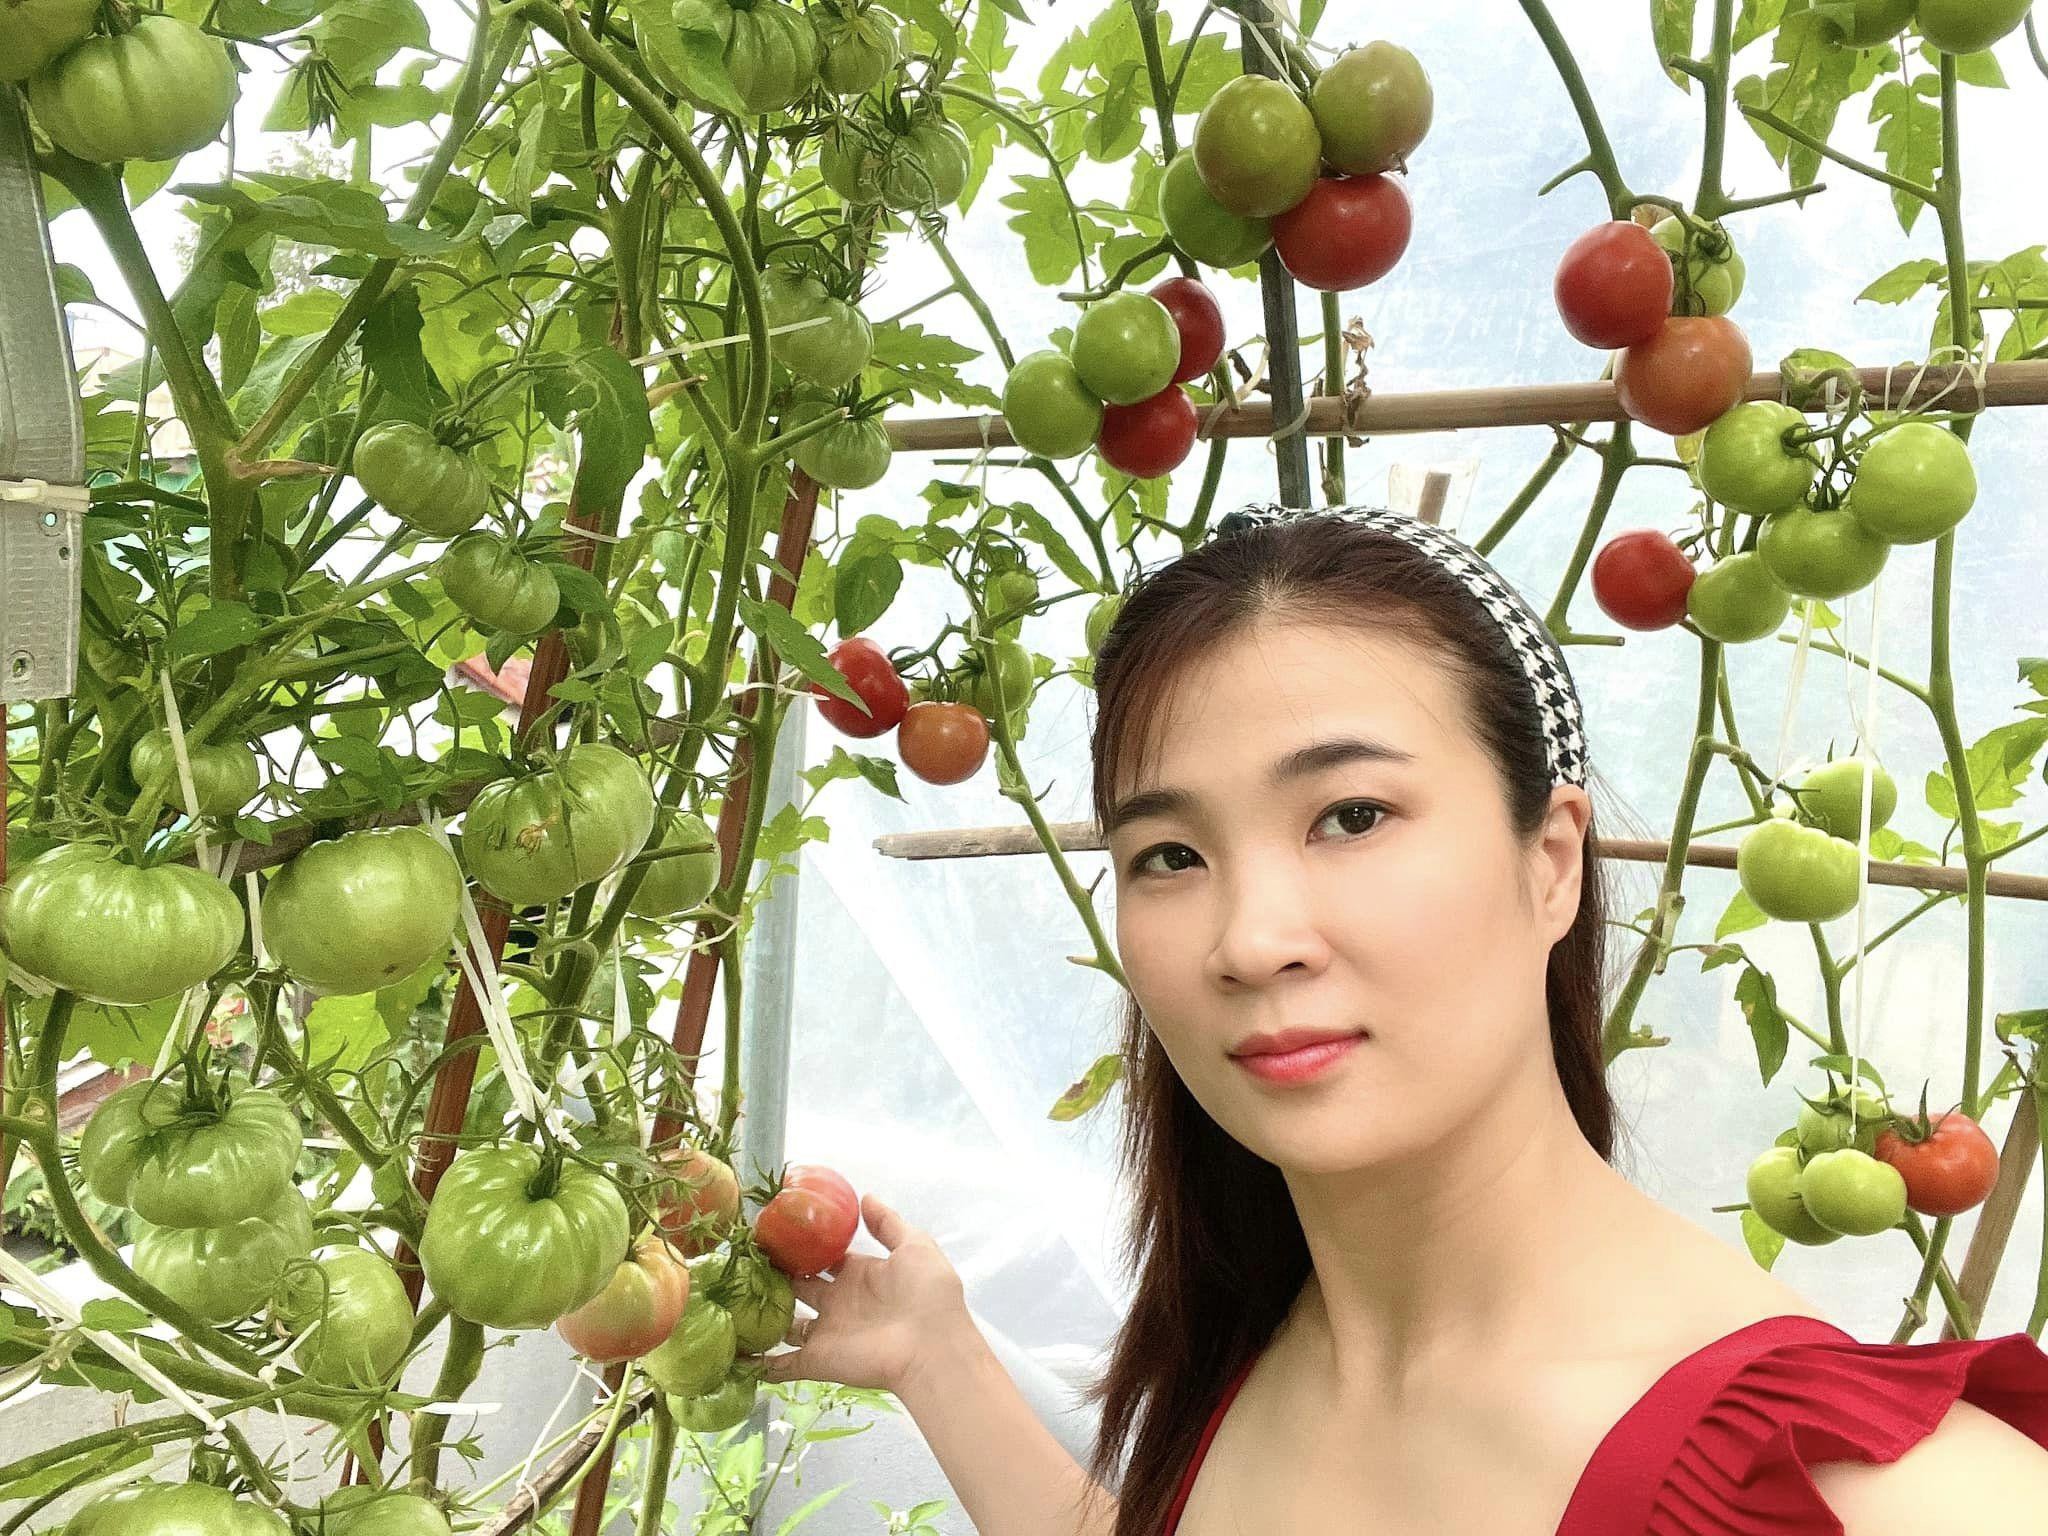 Mẹ đảm Đà Nẵng cải tạo sân thượng 20m2 để trồng rau sạch, chỉ tốn 5 triệu đồng